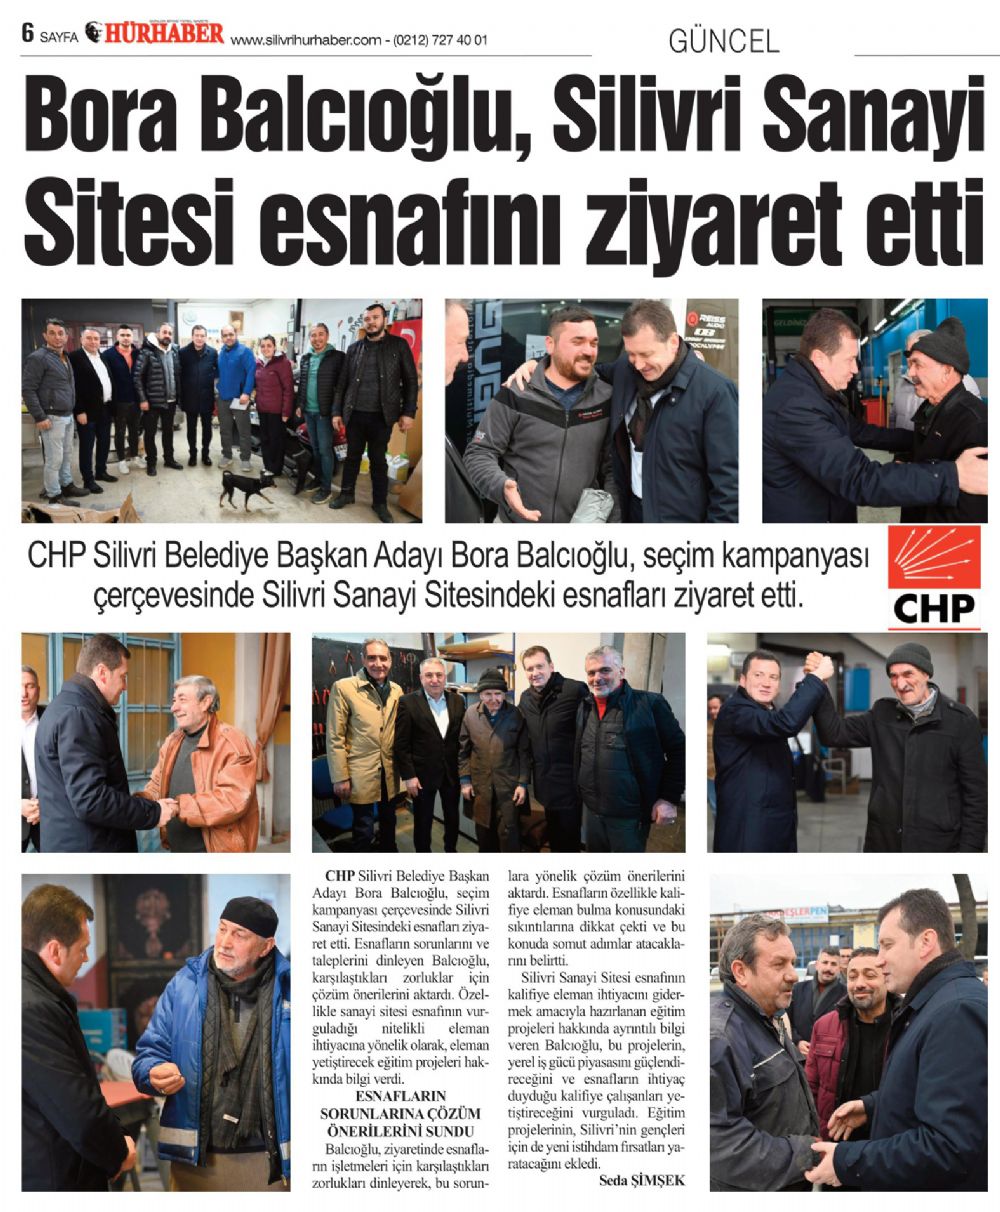 Bora Balcıoğlu, Silivri Sanayi Sitesi esnafını ziyaret etti